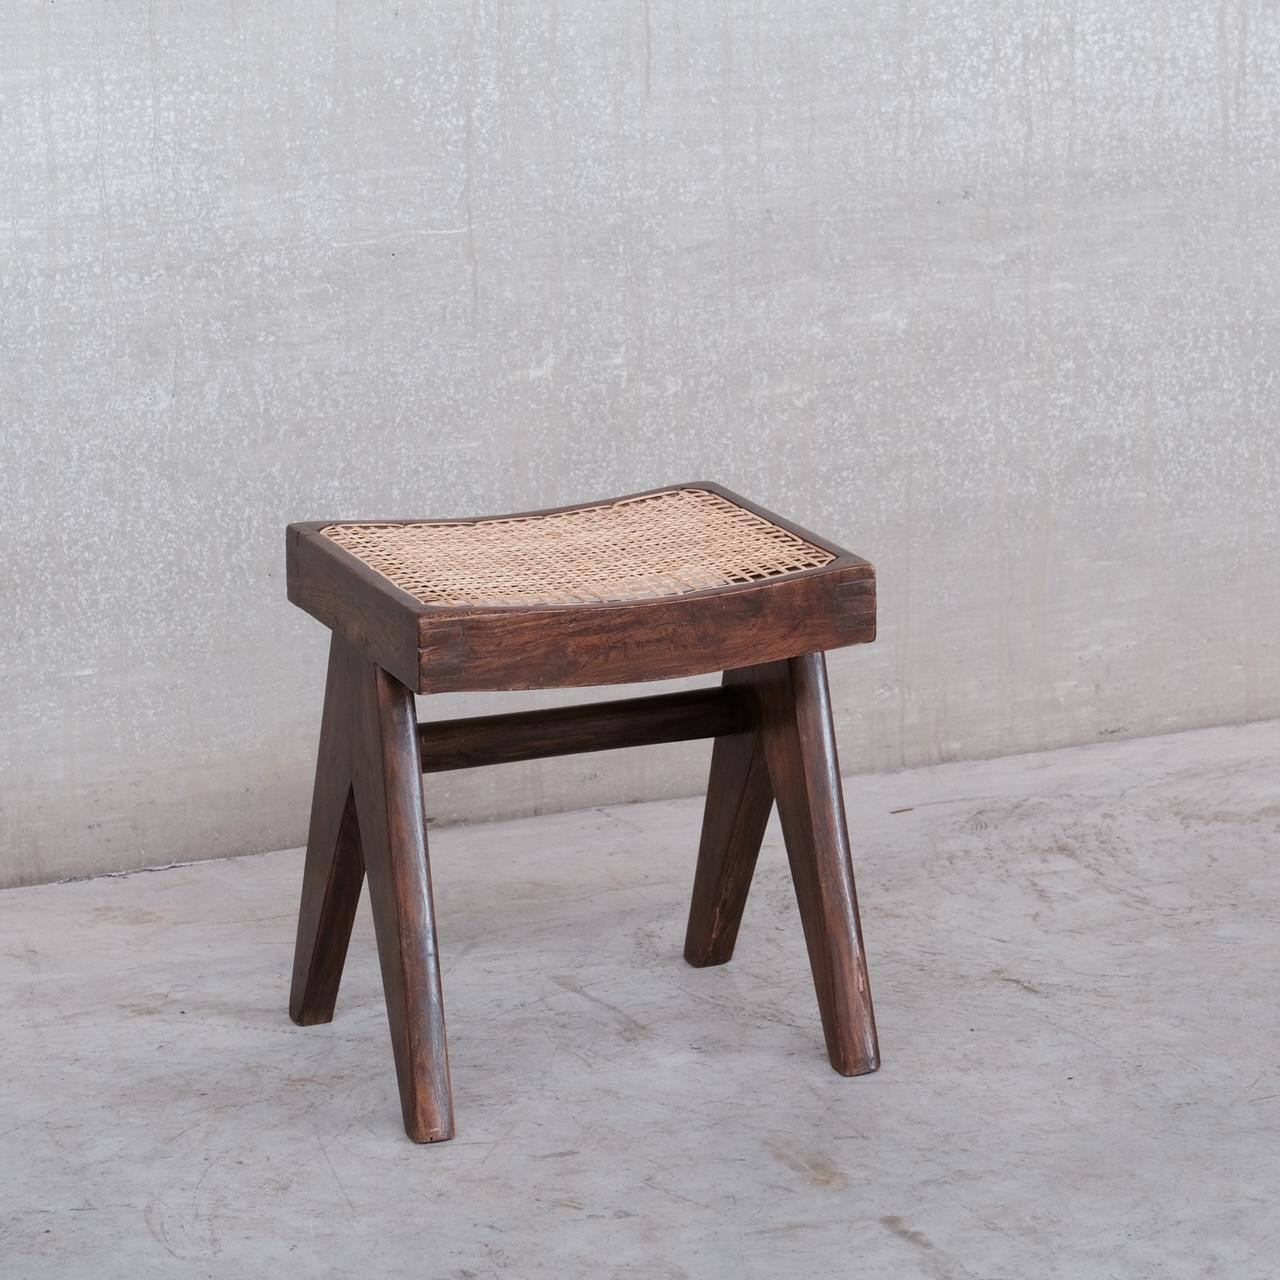 pierre jeanneret stool